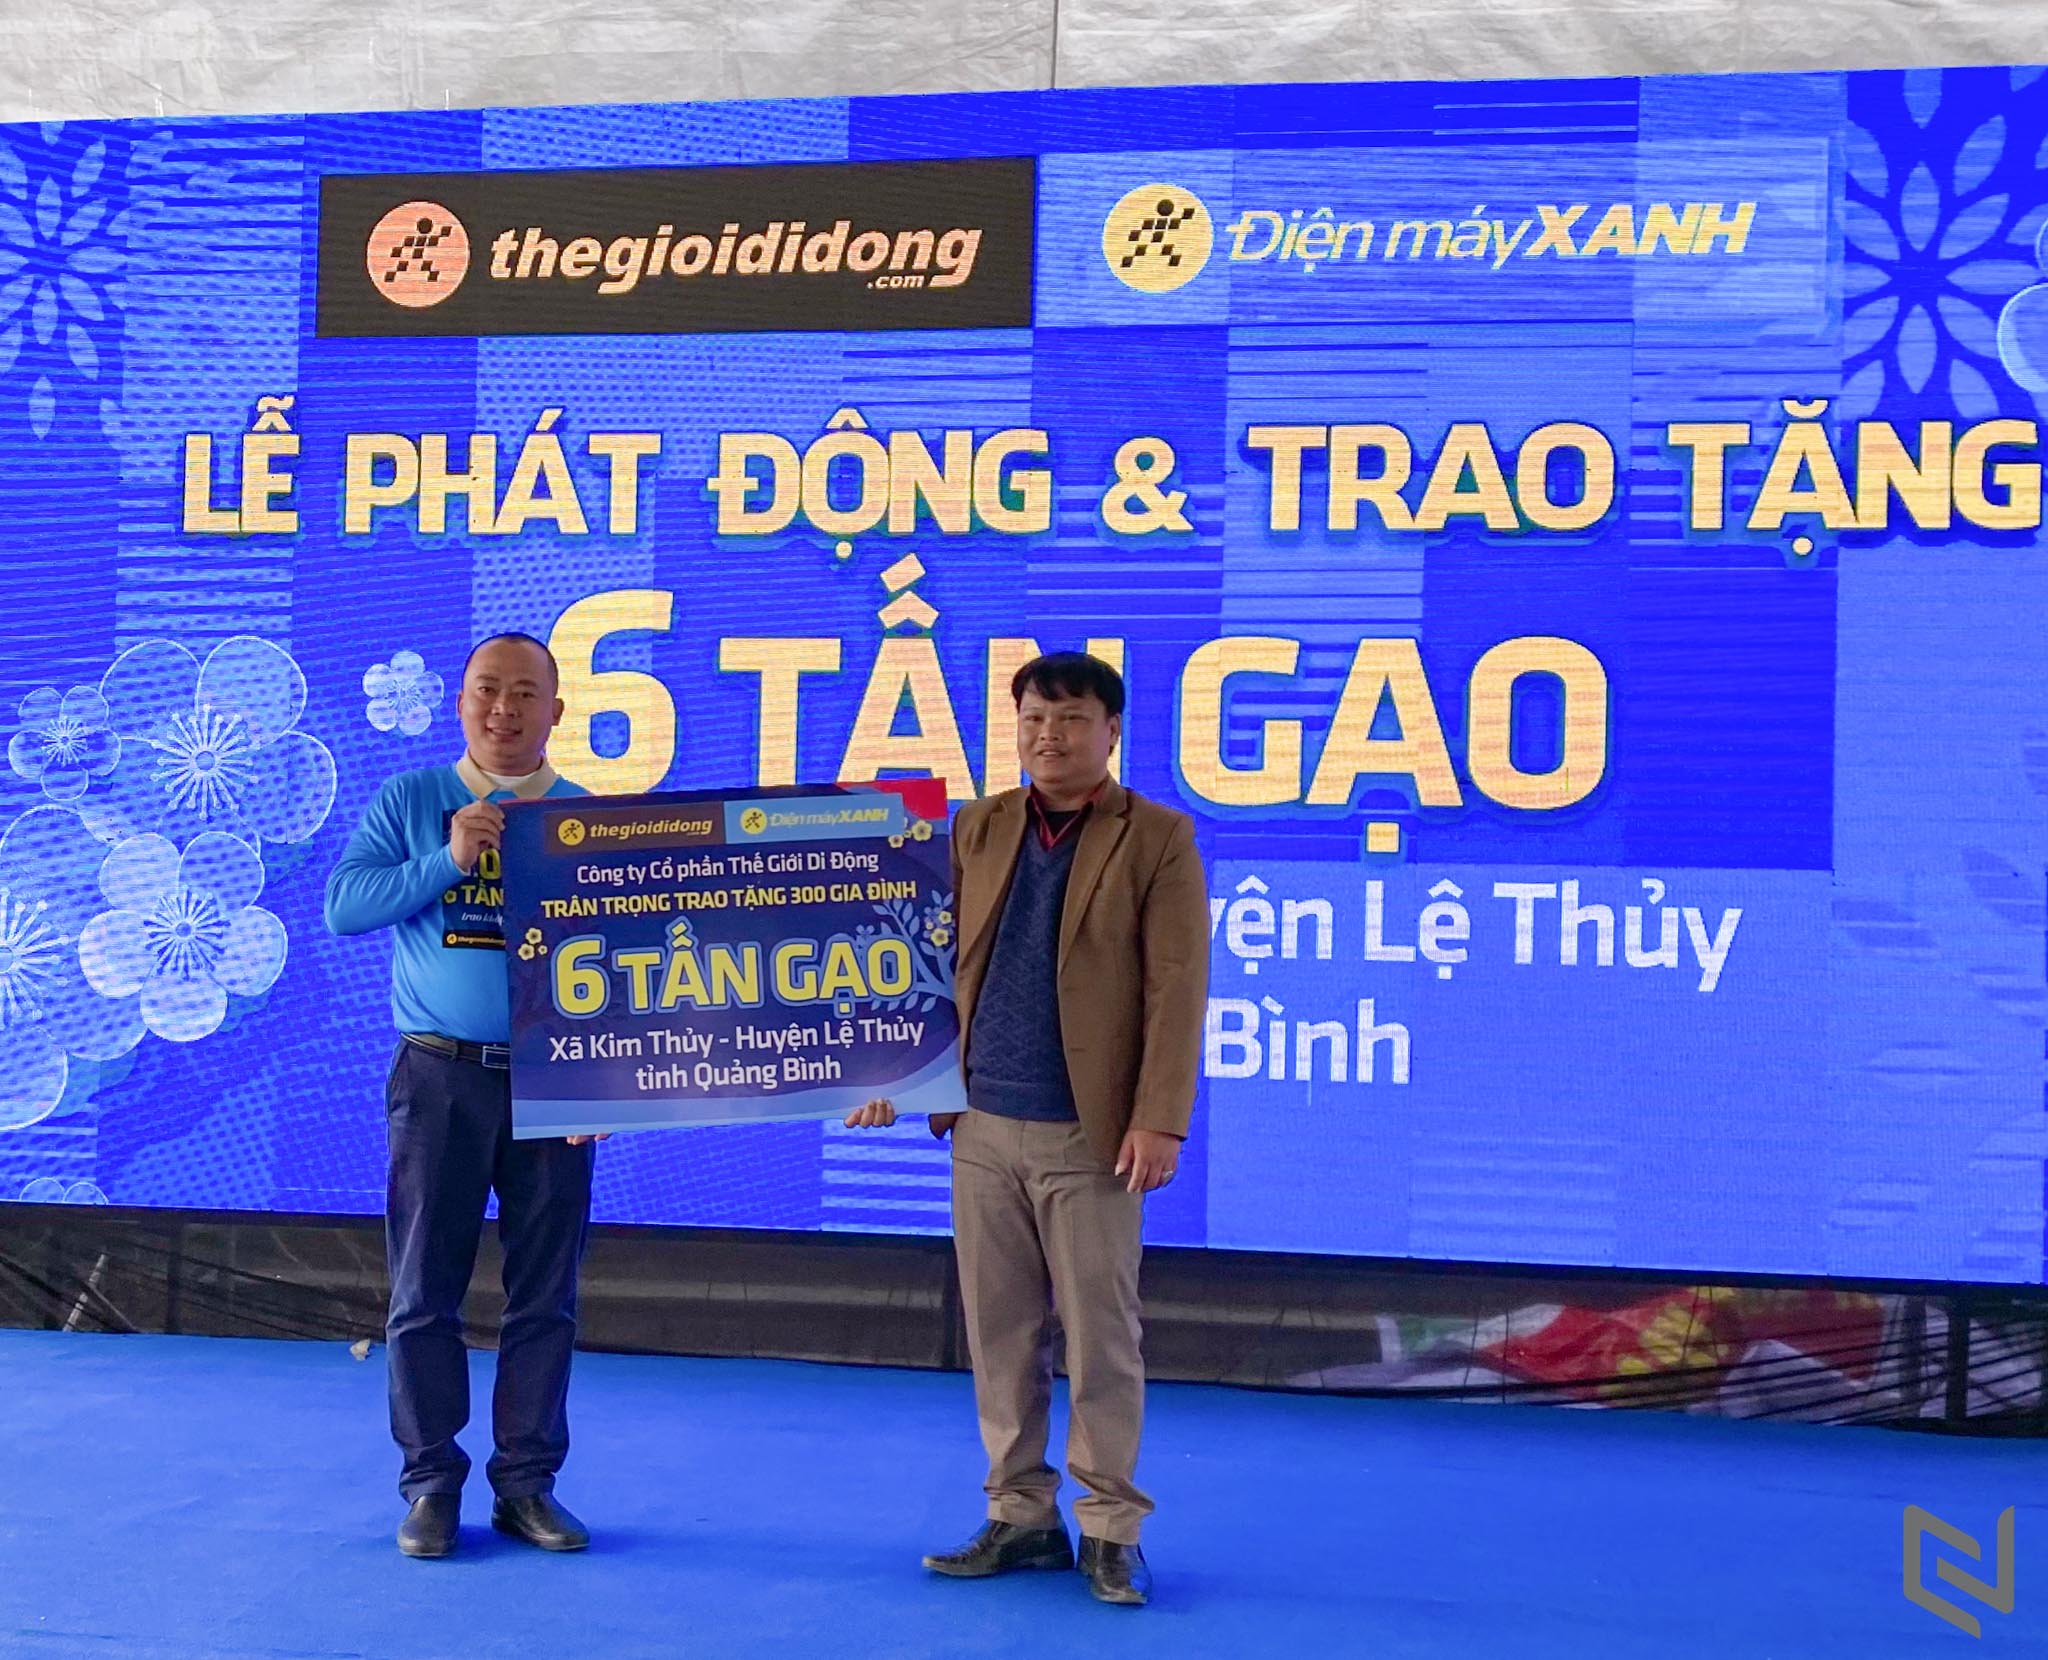 Thế Giới Di Động khởi động chương trình “Tết sẻ chia”: trao tặng 1,000 tấn gạo đến 50,000 hộ gia đình trên khắp Việt Nam